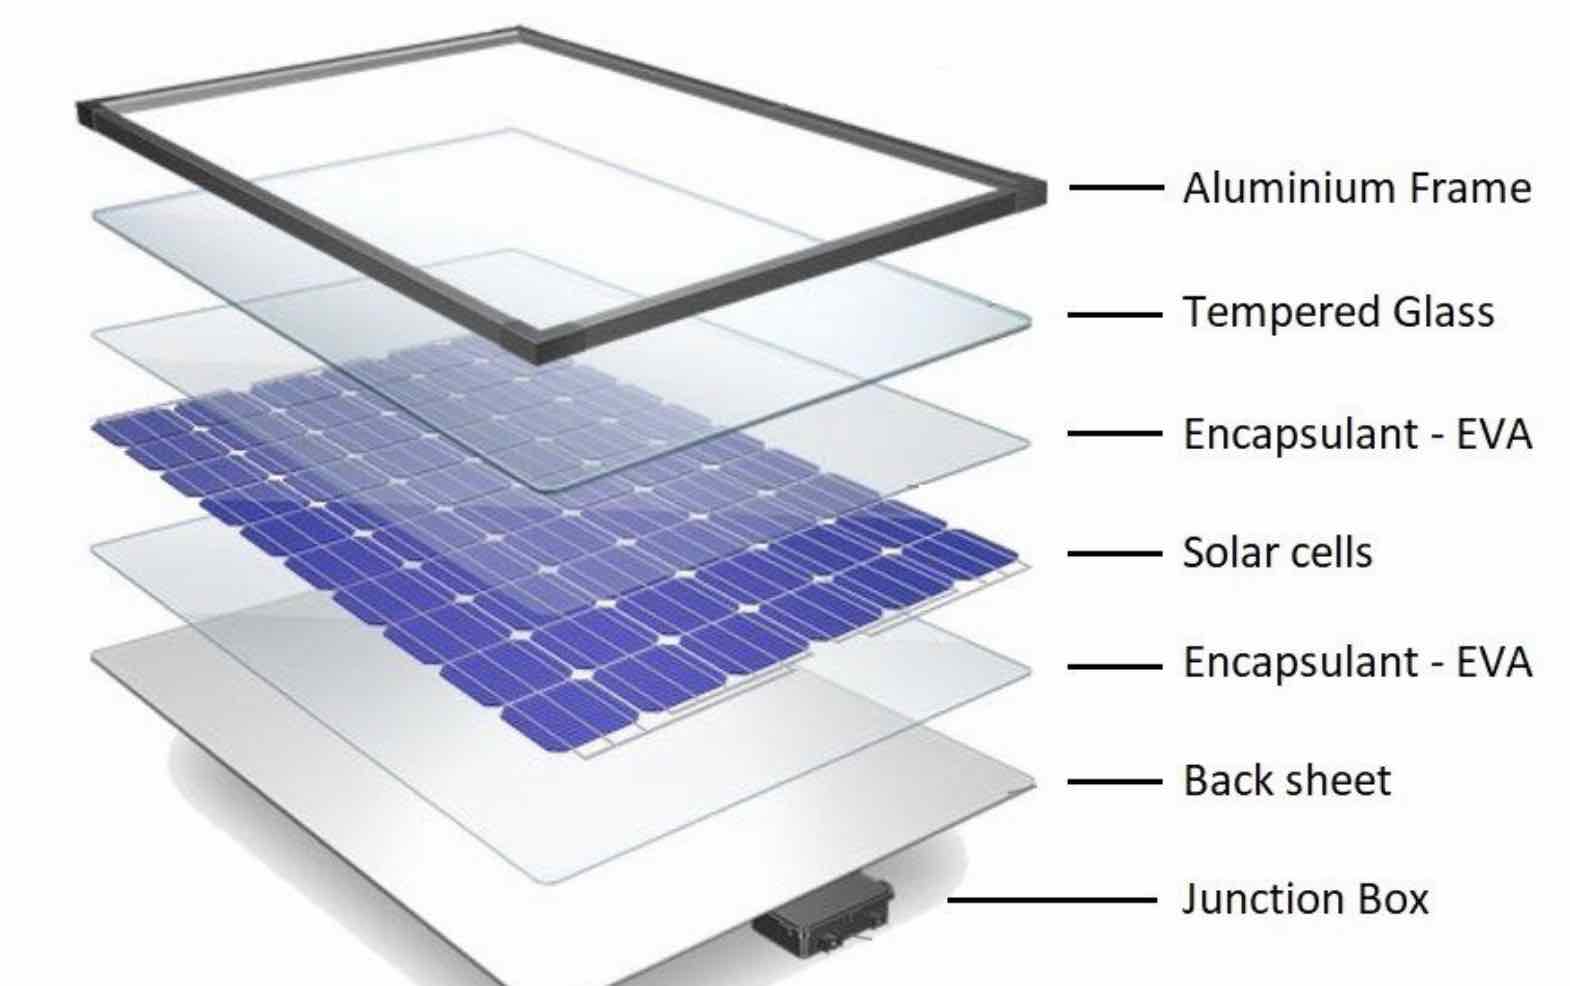 Broken upper glass leaves little protection for internal solar cells